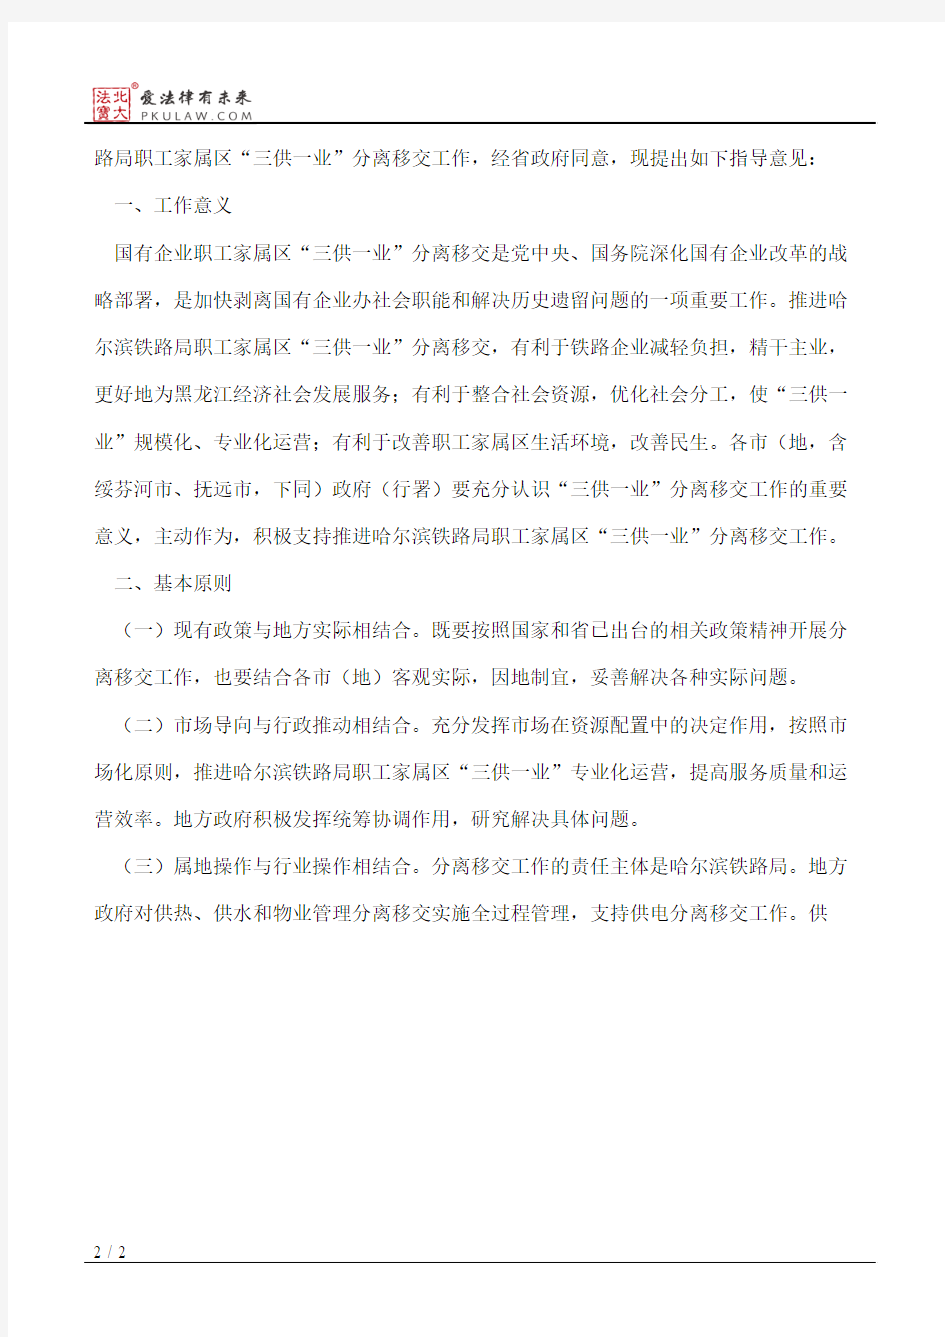 黑龙江省人民政府办公厅关于哈尔滨铁路局职工家属区“三供一业”